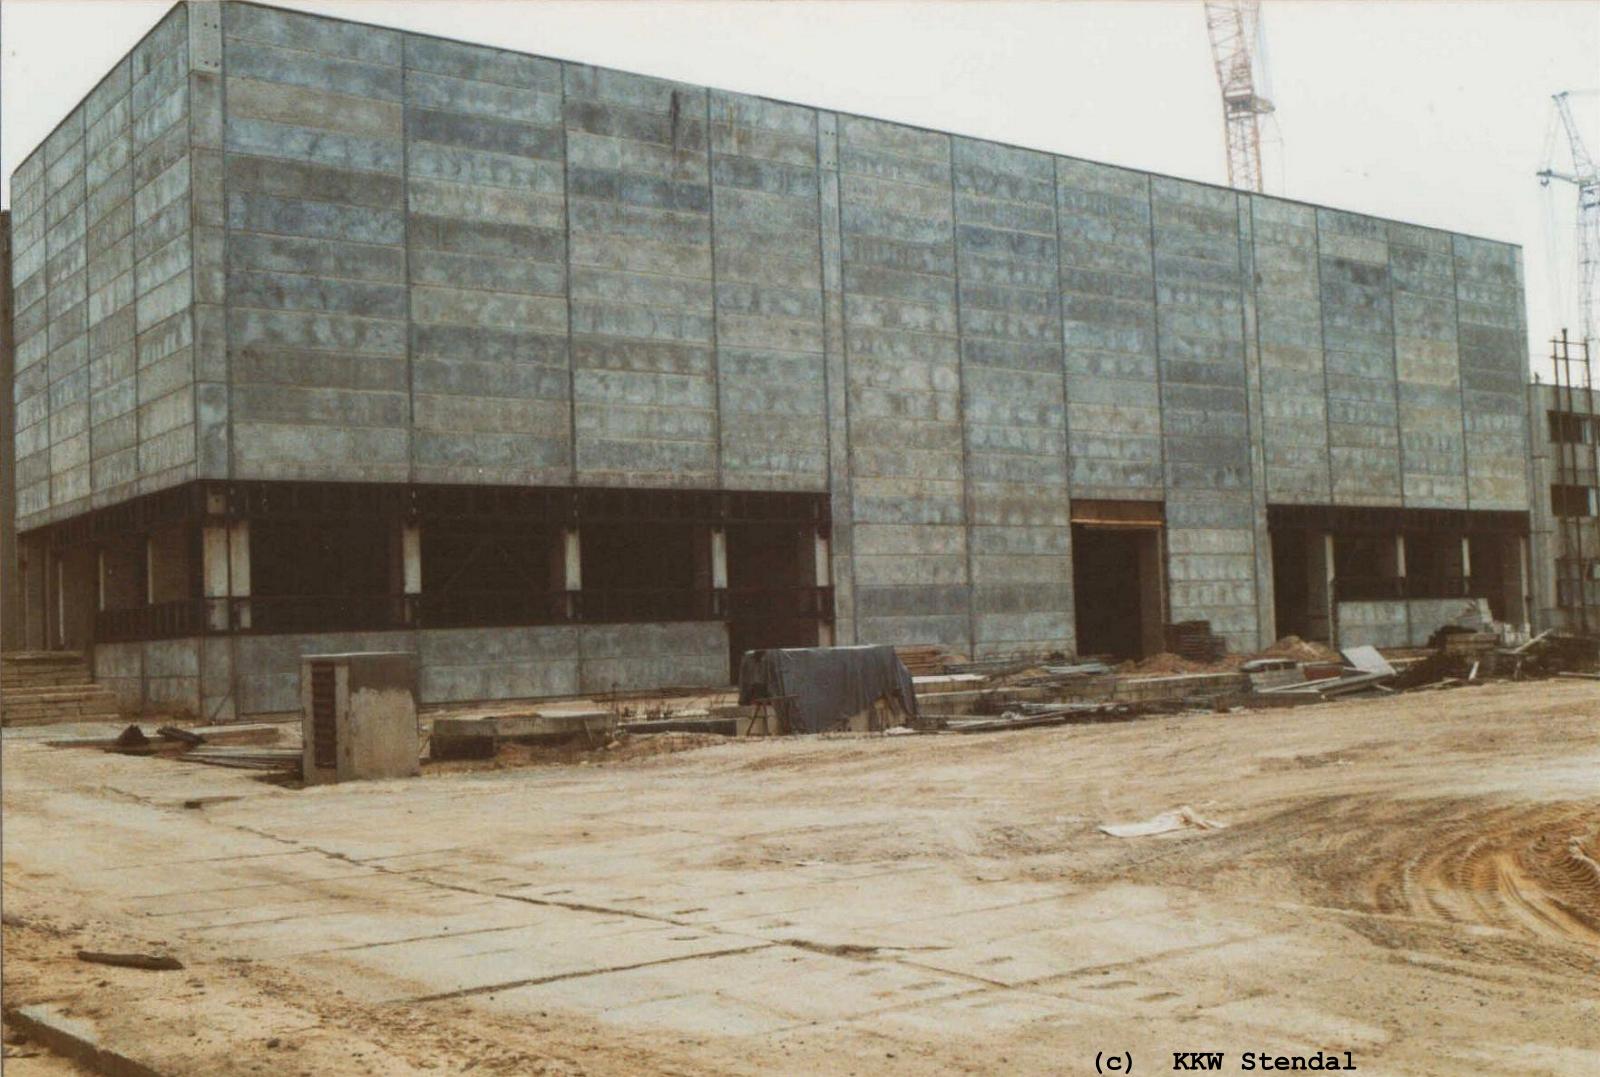  KKW Stendal, Baustelle 1990, ZAW Zentrale Aktive Werkstatt, Ostfront 